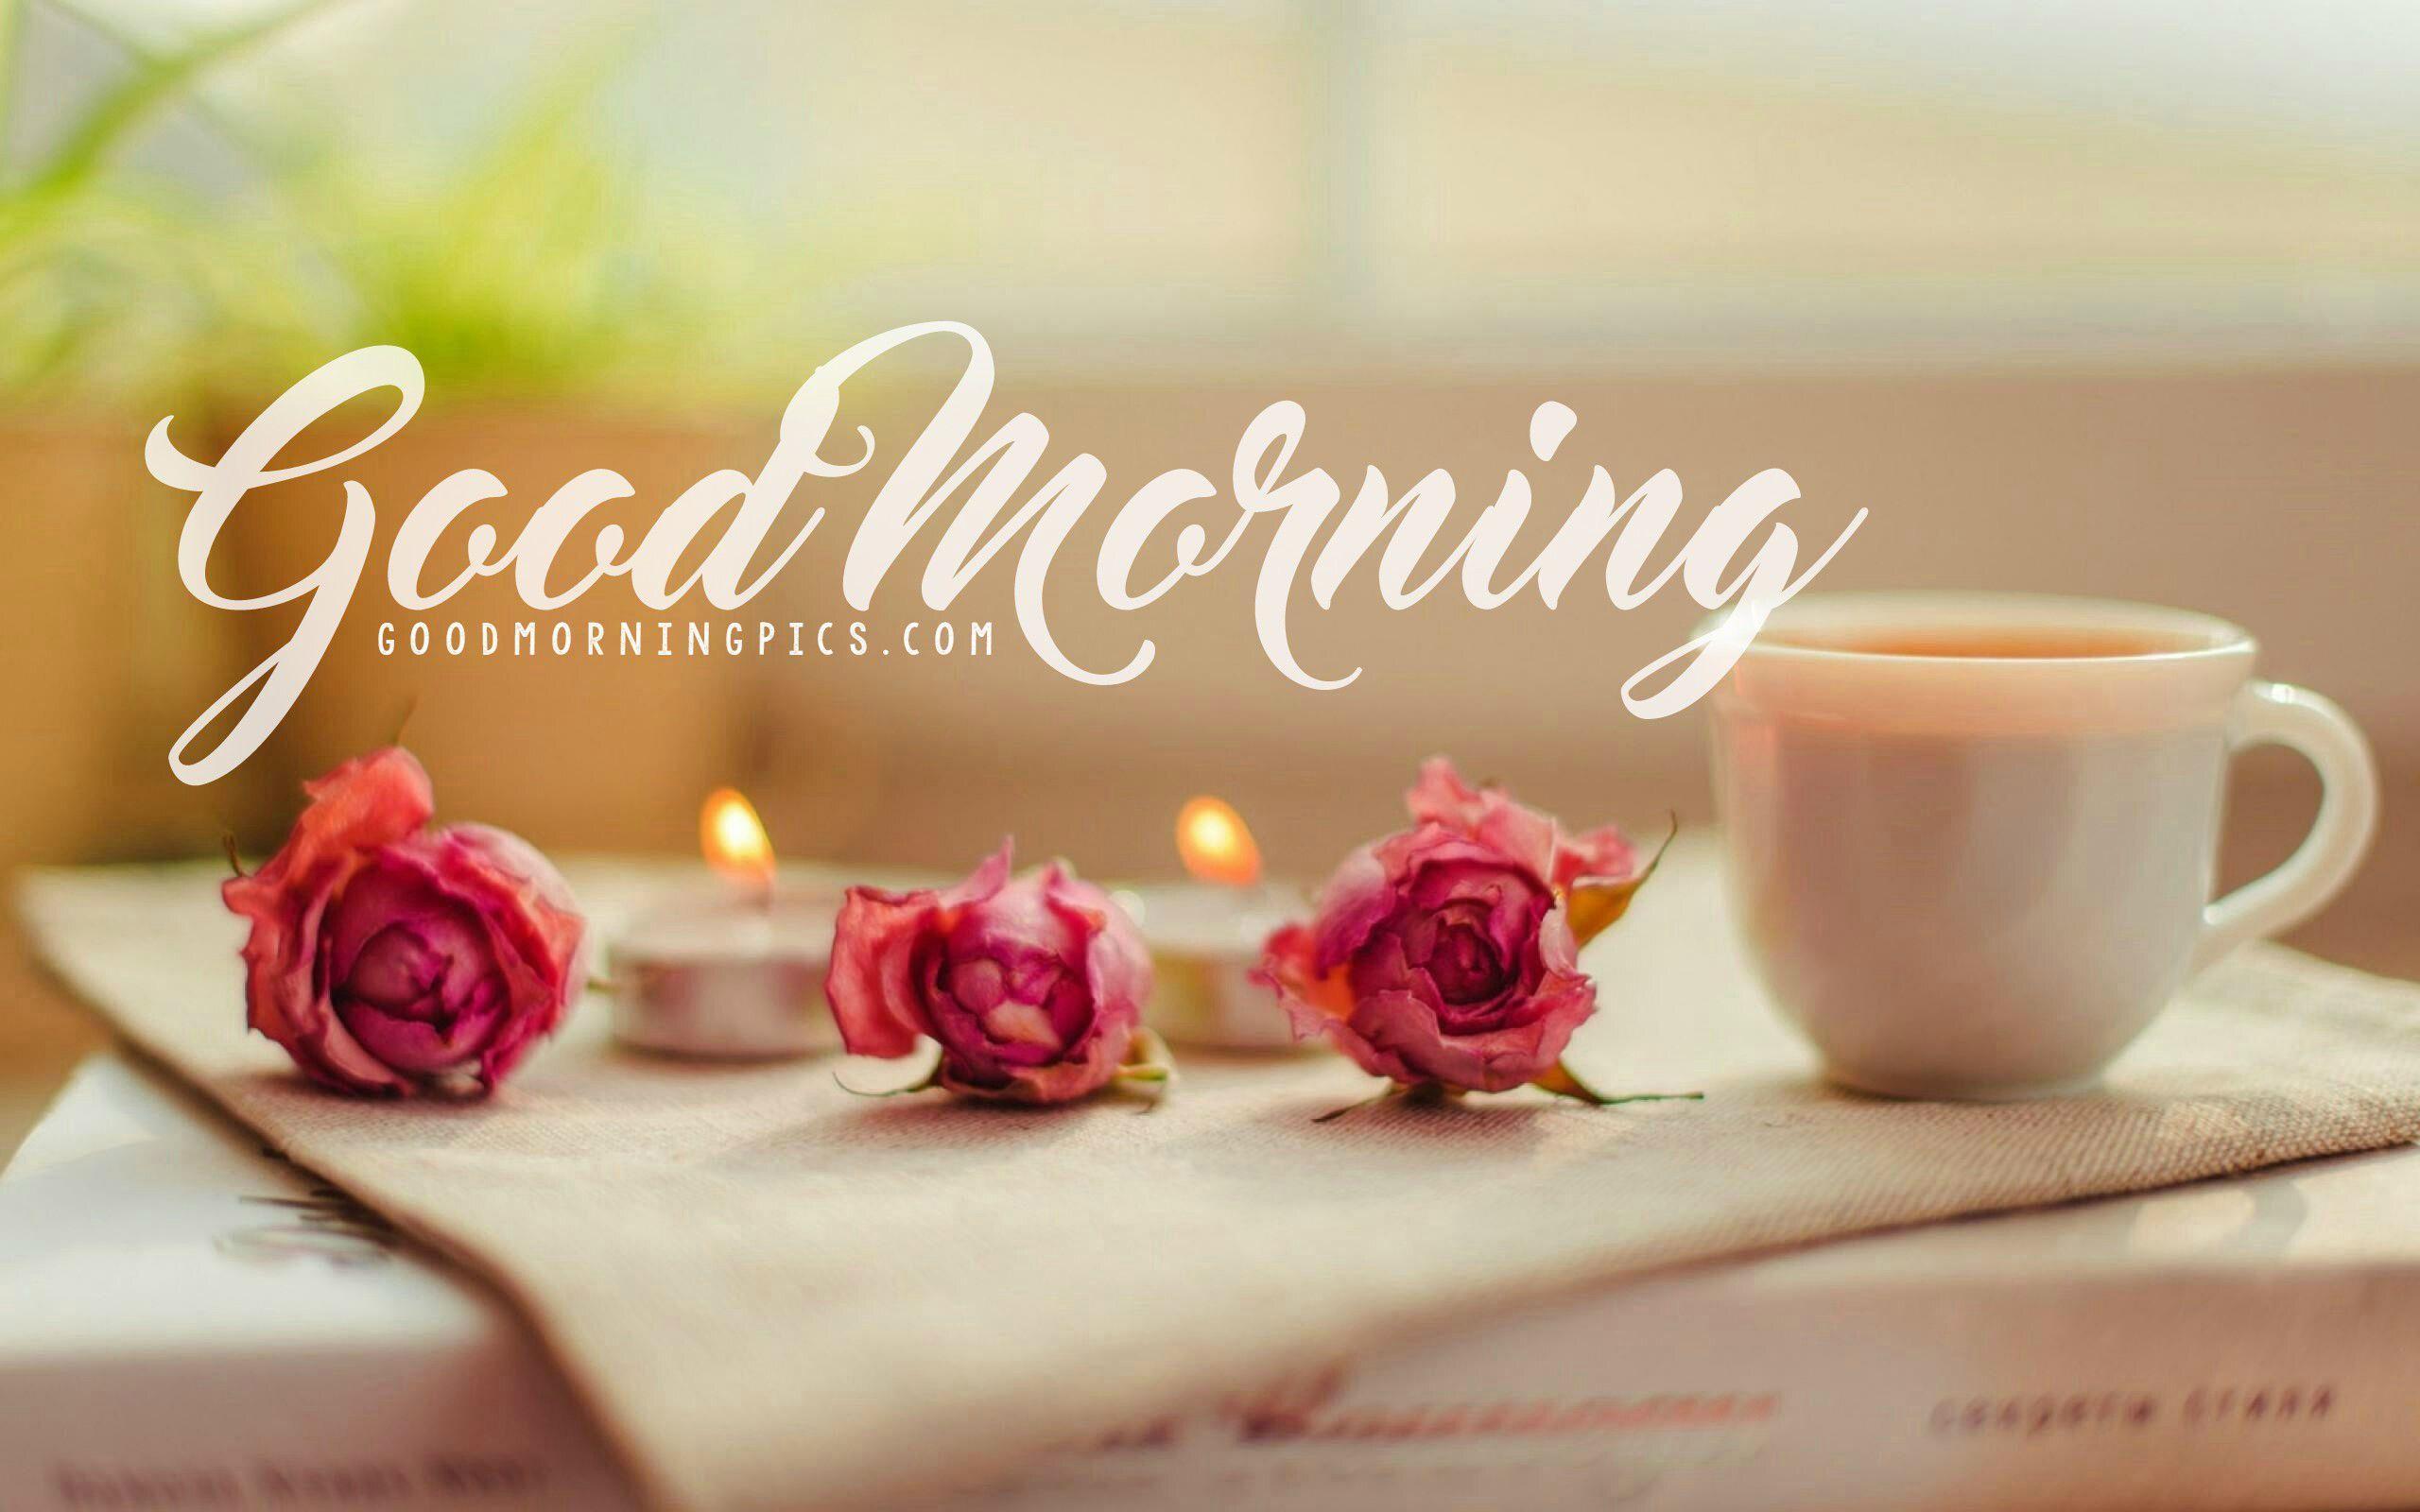 Really good morning. Утренние цветы. Кофе и цветы. Утренние цветы картинки. Кофе с цветами.